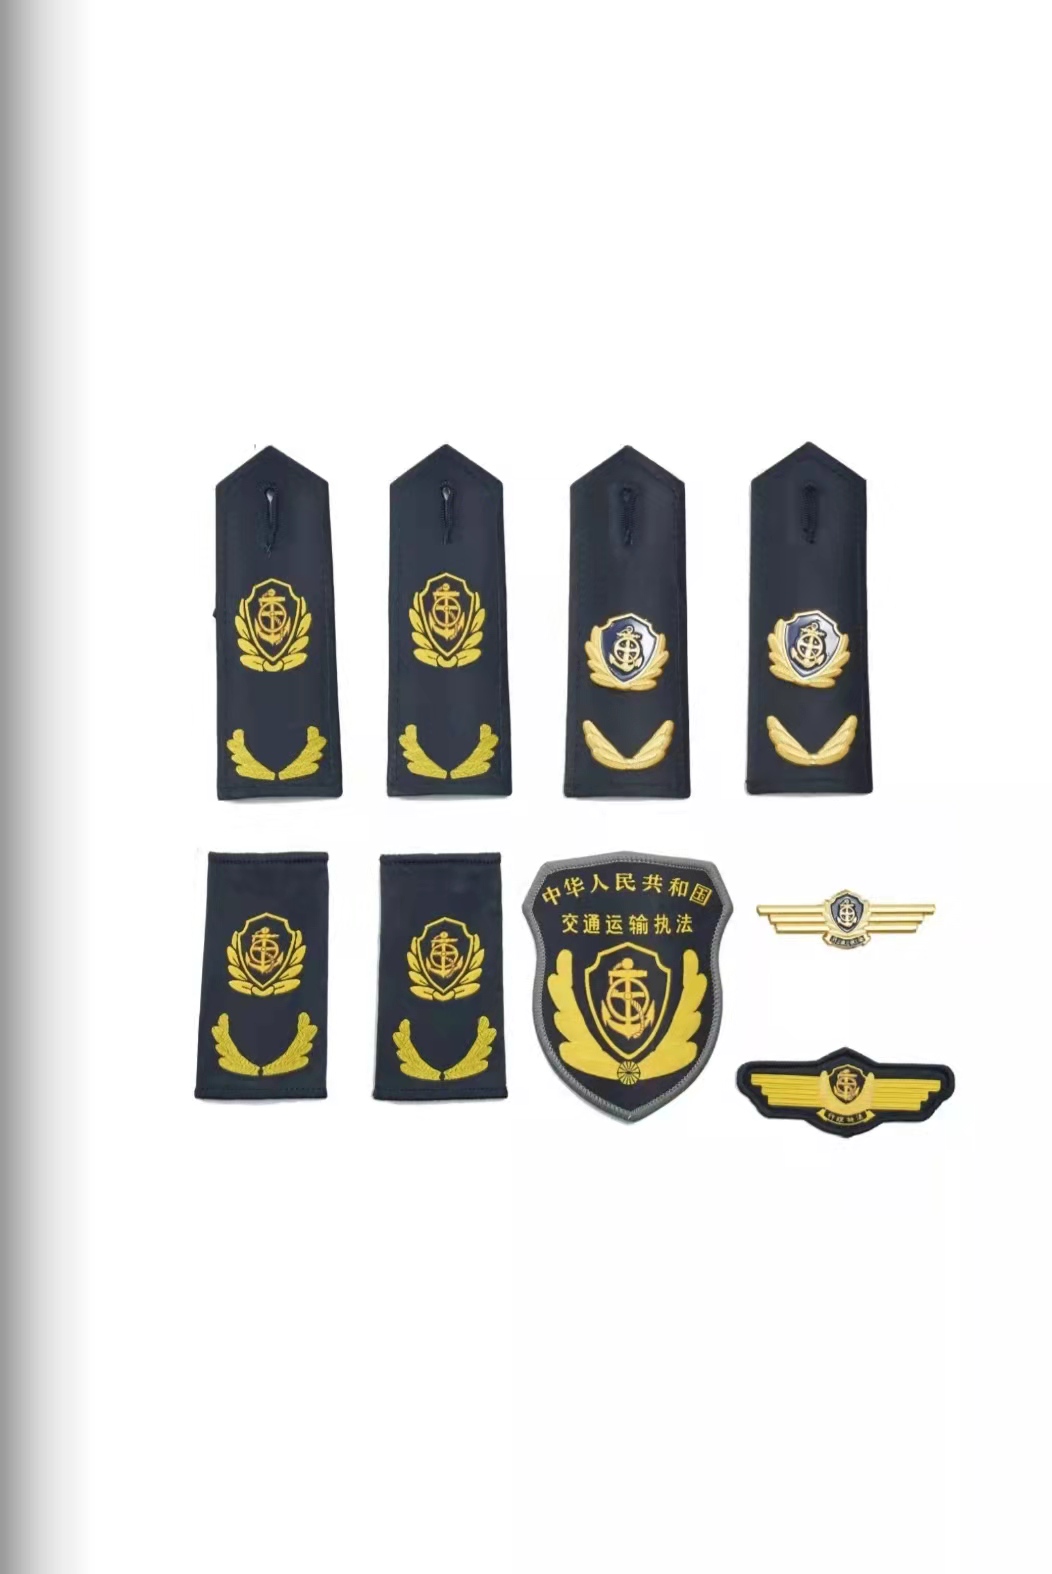 河南六部门统一交通运输执法服装标志